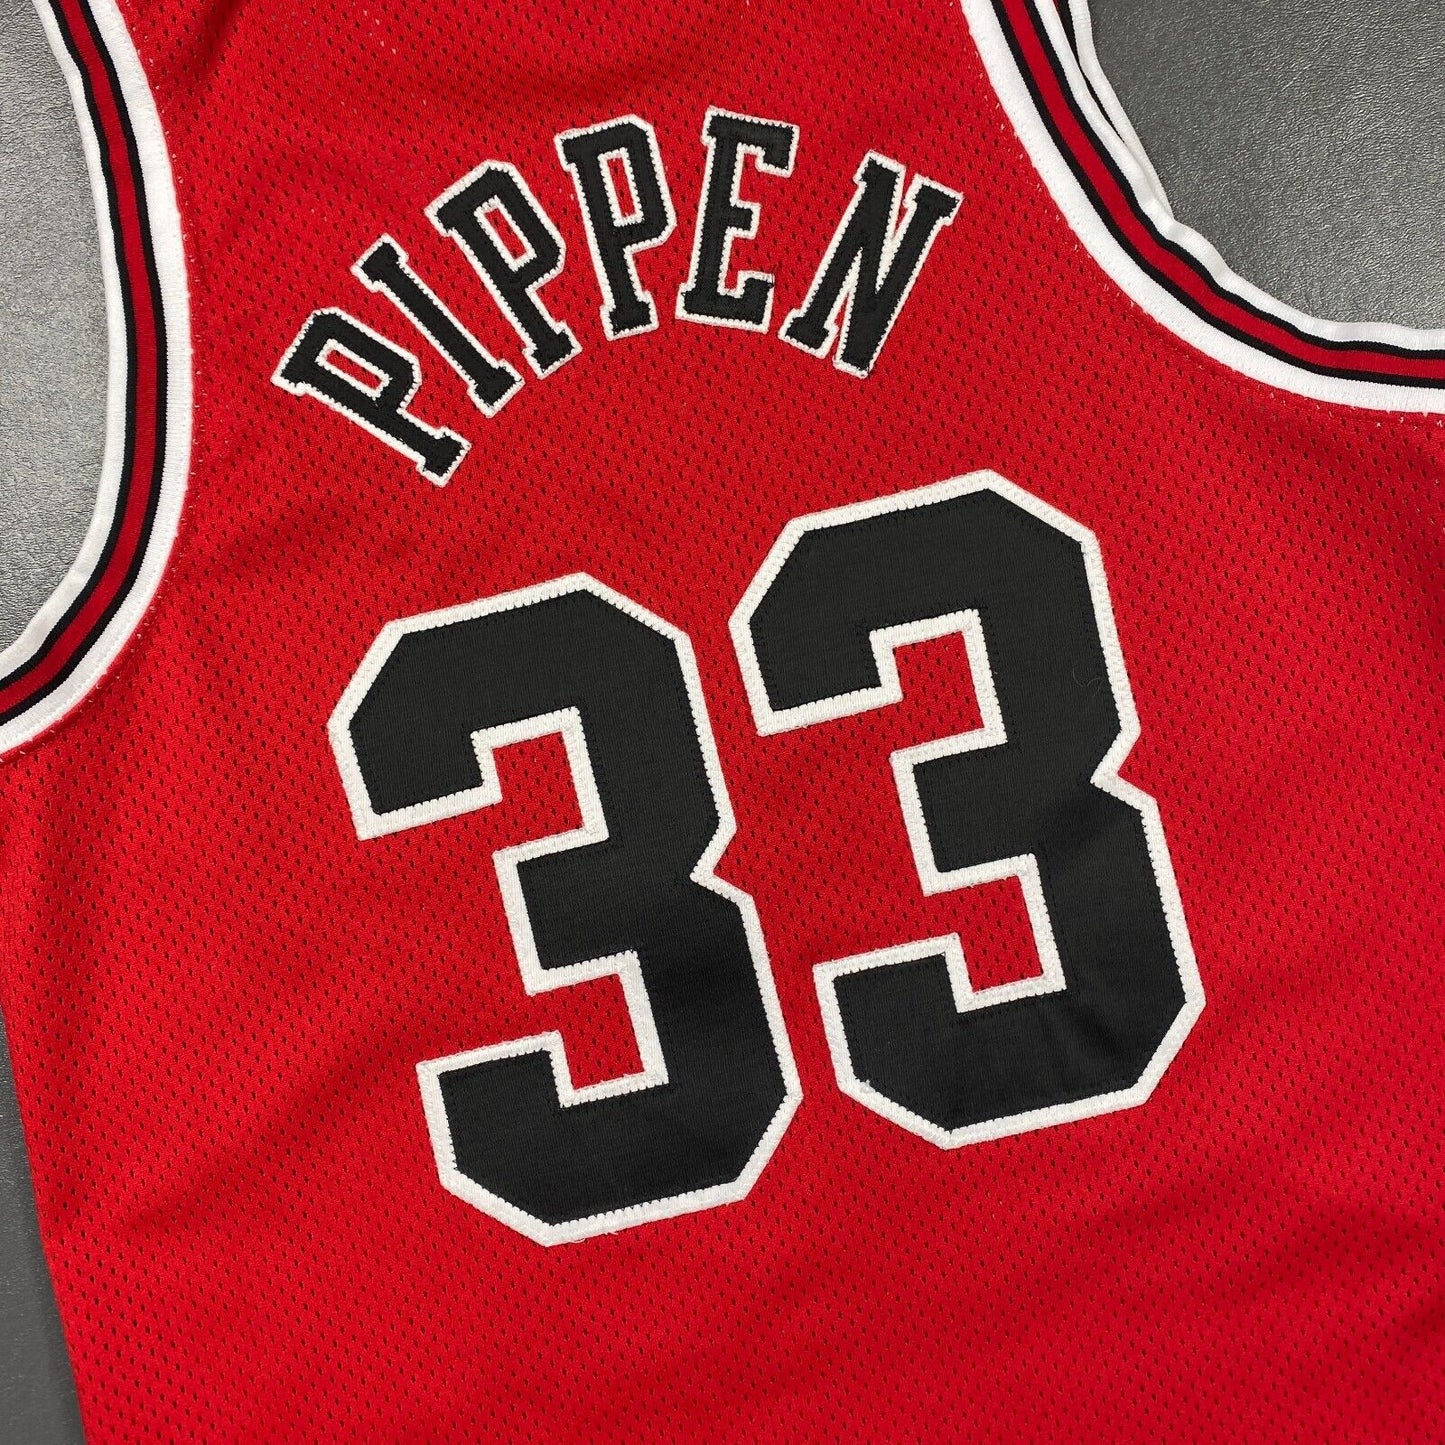 100% Authentic Scottie Pippen Vintage Nike 97 98 Bulls Jersey Size 40 M Mens